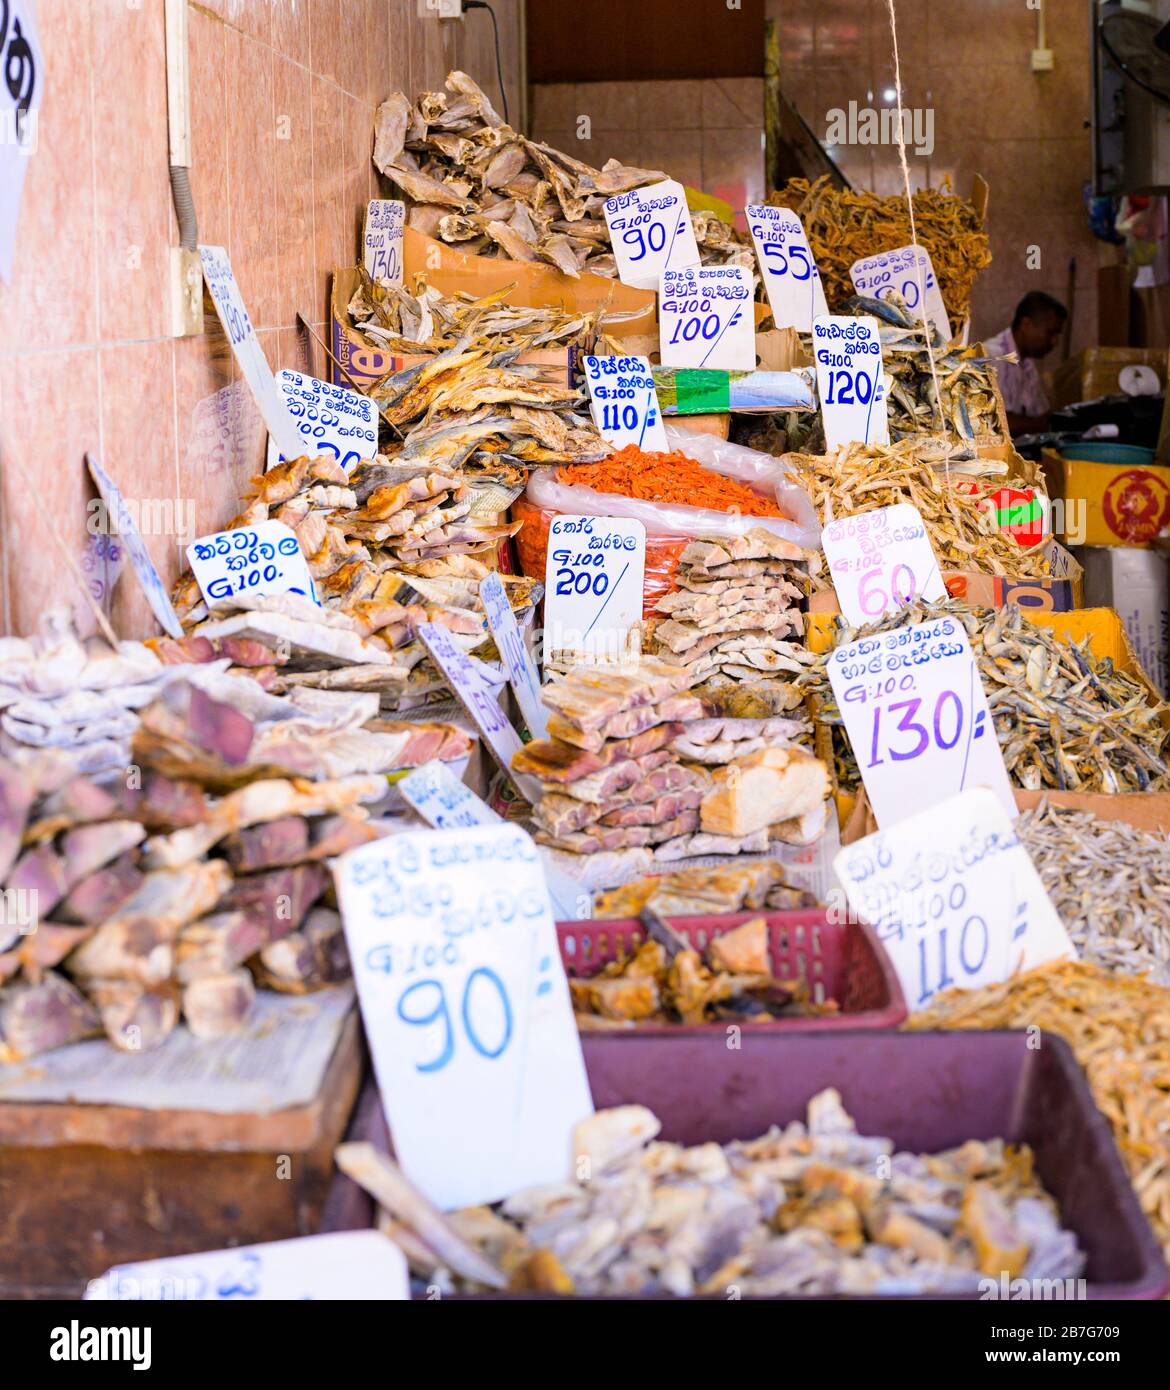 Asia meridionale Sri Lanka Kandy Sinhala Provincia Centrale antica capitale centro città centro strada mercato scena negozio negozio di pesce secco salato scatola di cartone Foto Stock